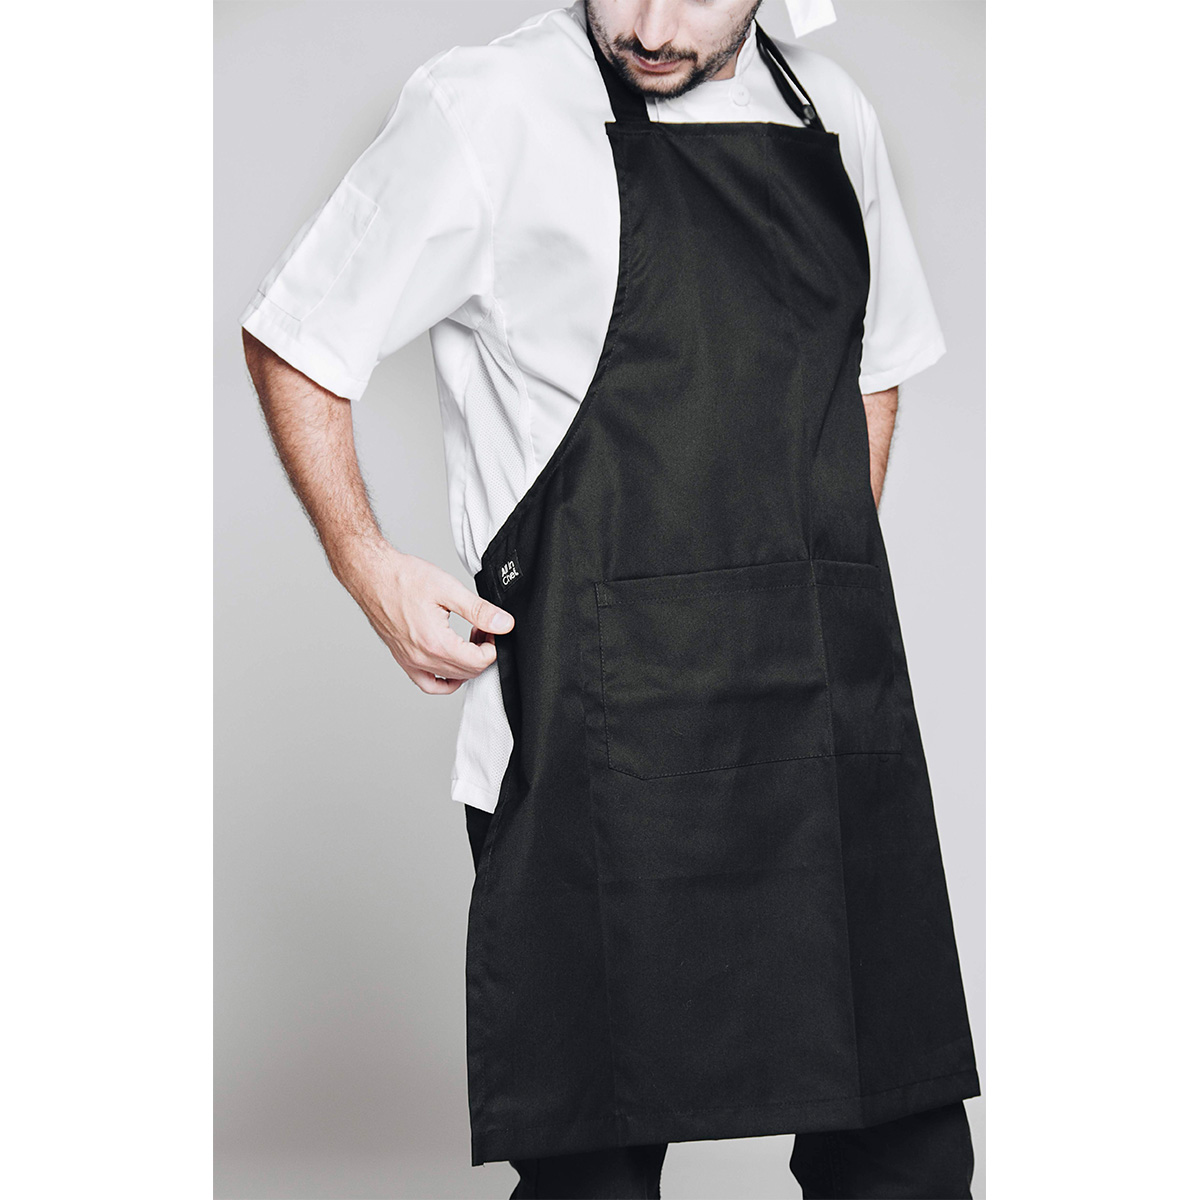 Delantal Pechera Gris by All in Chef, uniformes, Hoteles y Restaurantes, Categorias